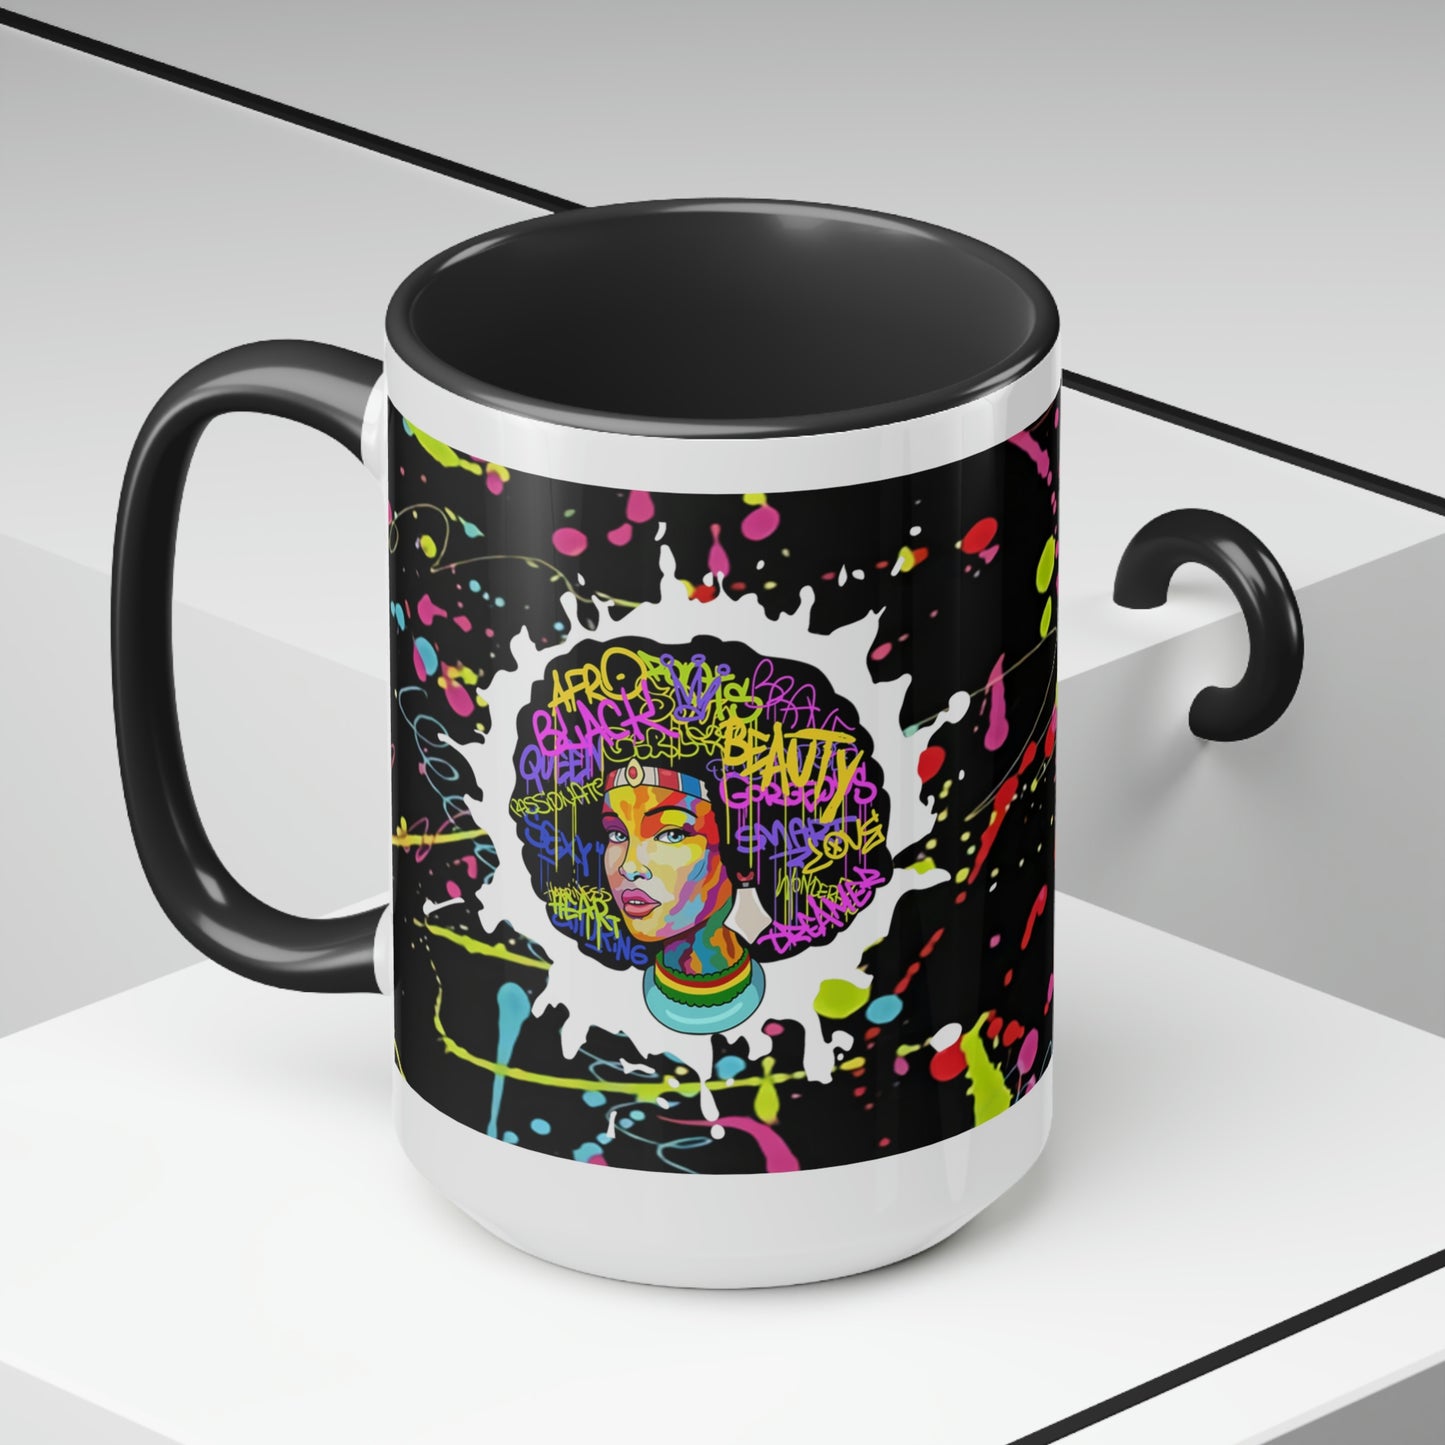 Black Queen Nutrition Two-Tone Coffee Mugs| Graffiti Mug